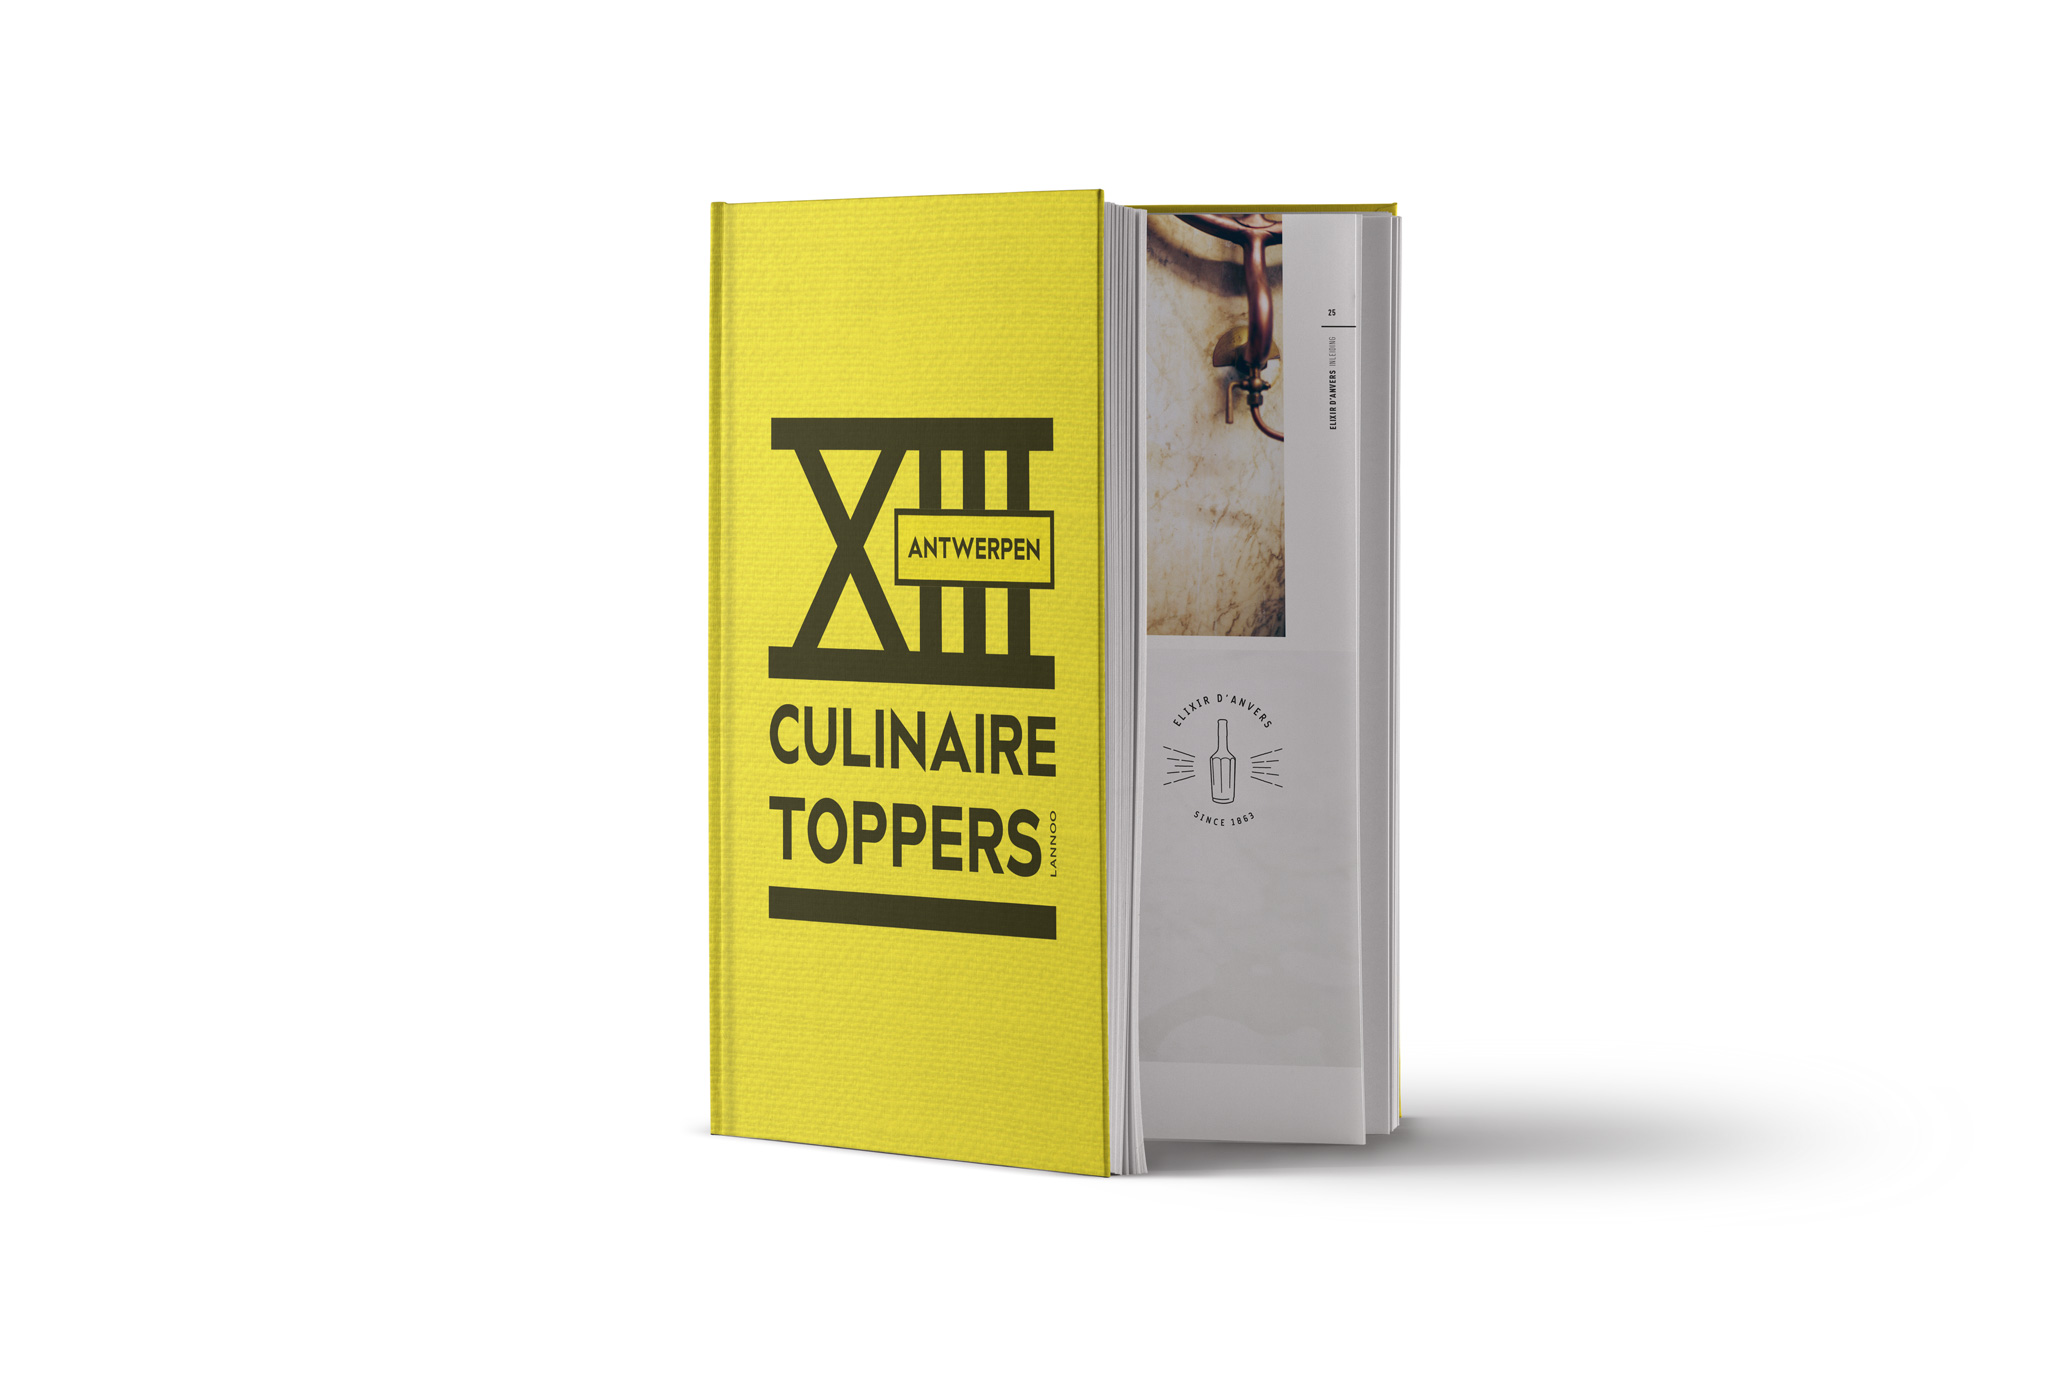 XIII Culinaire Toppers Antwerpen